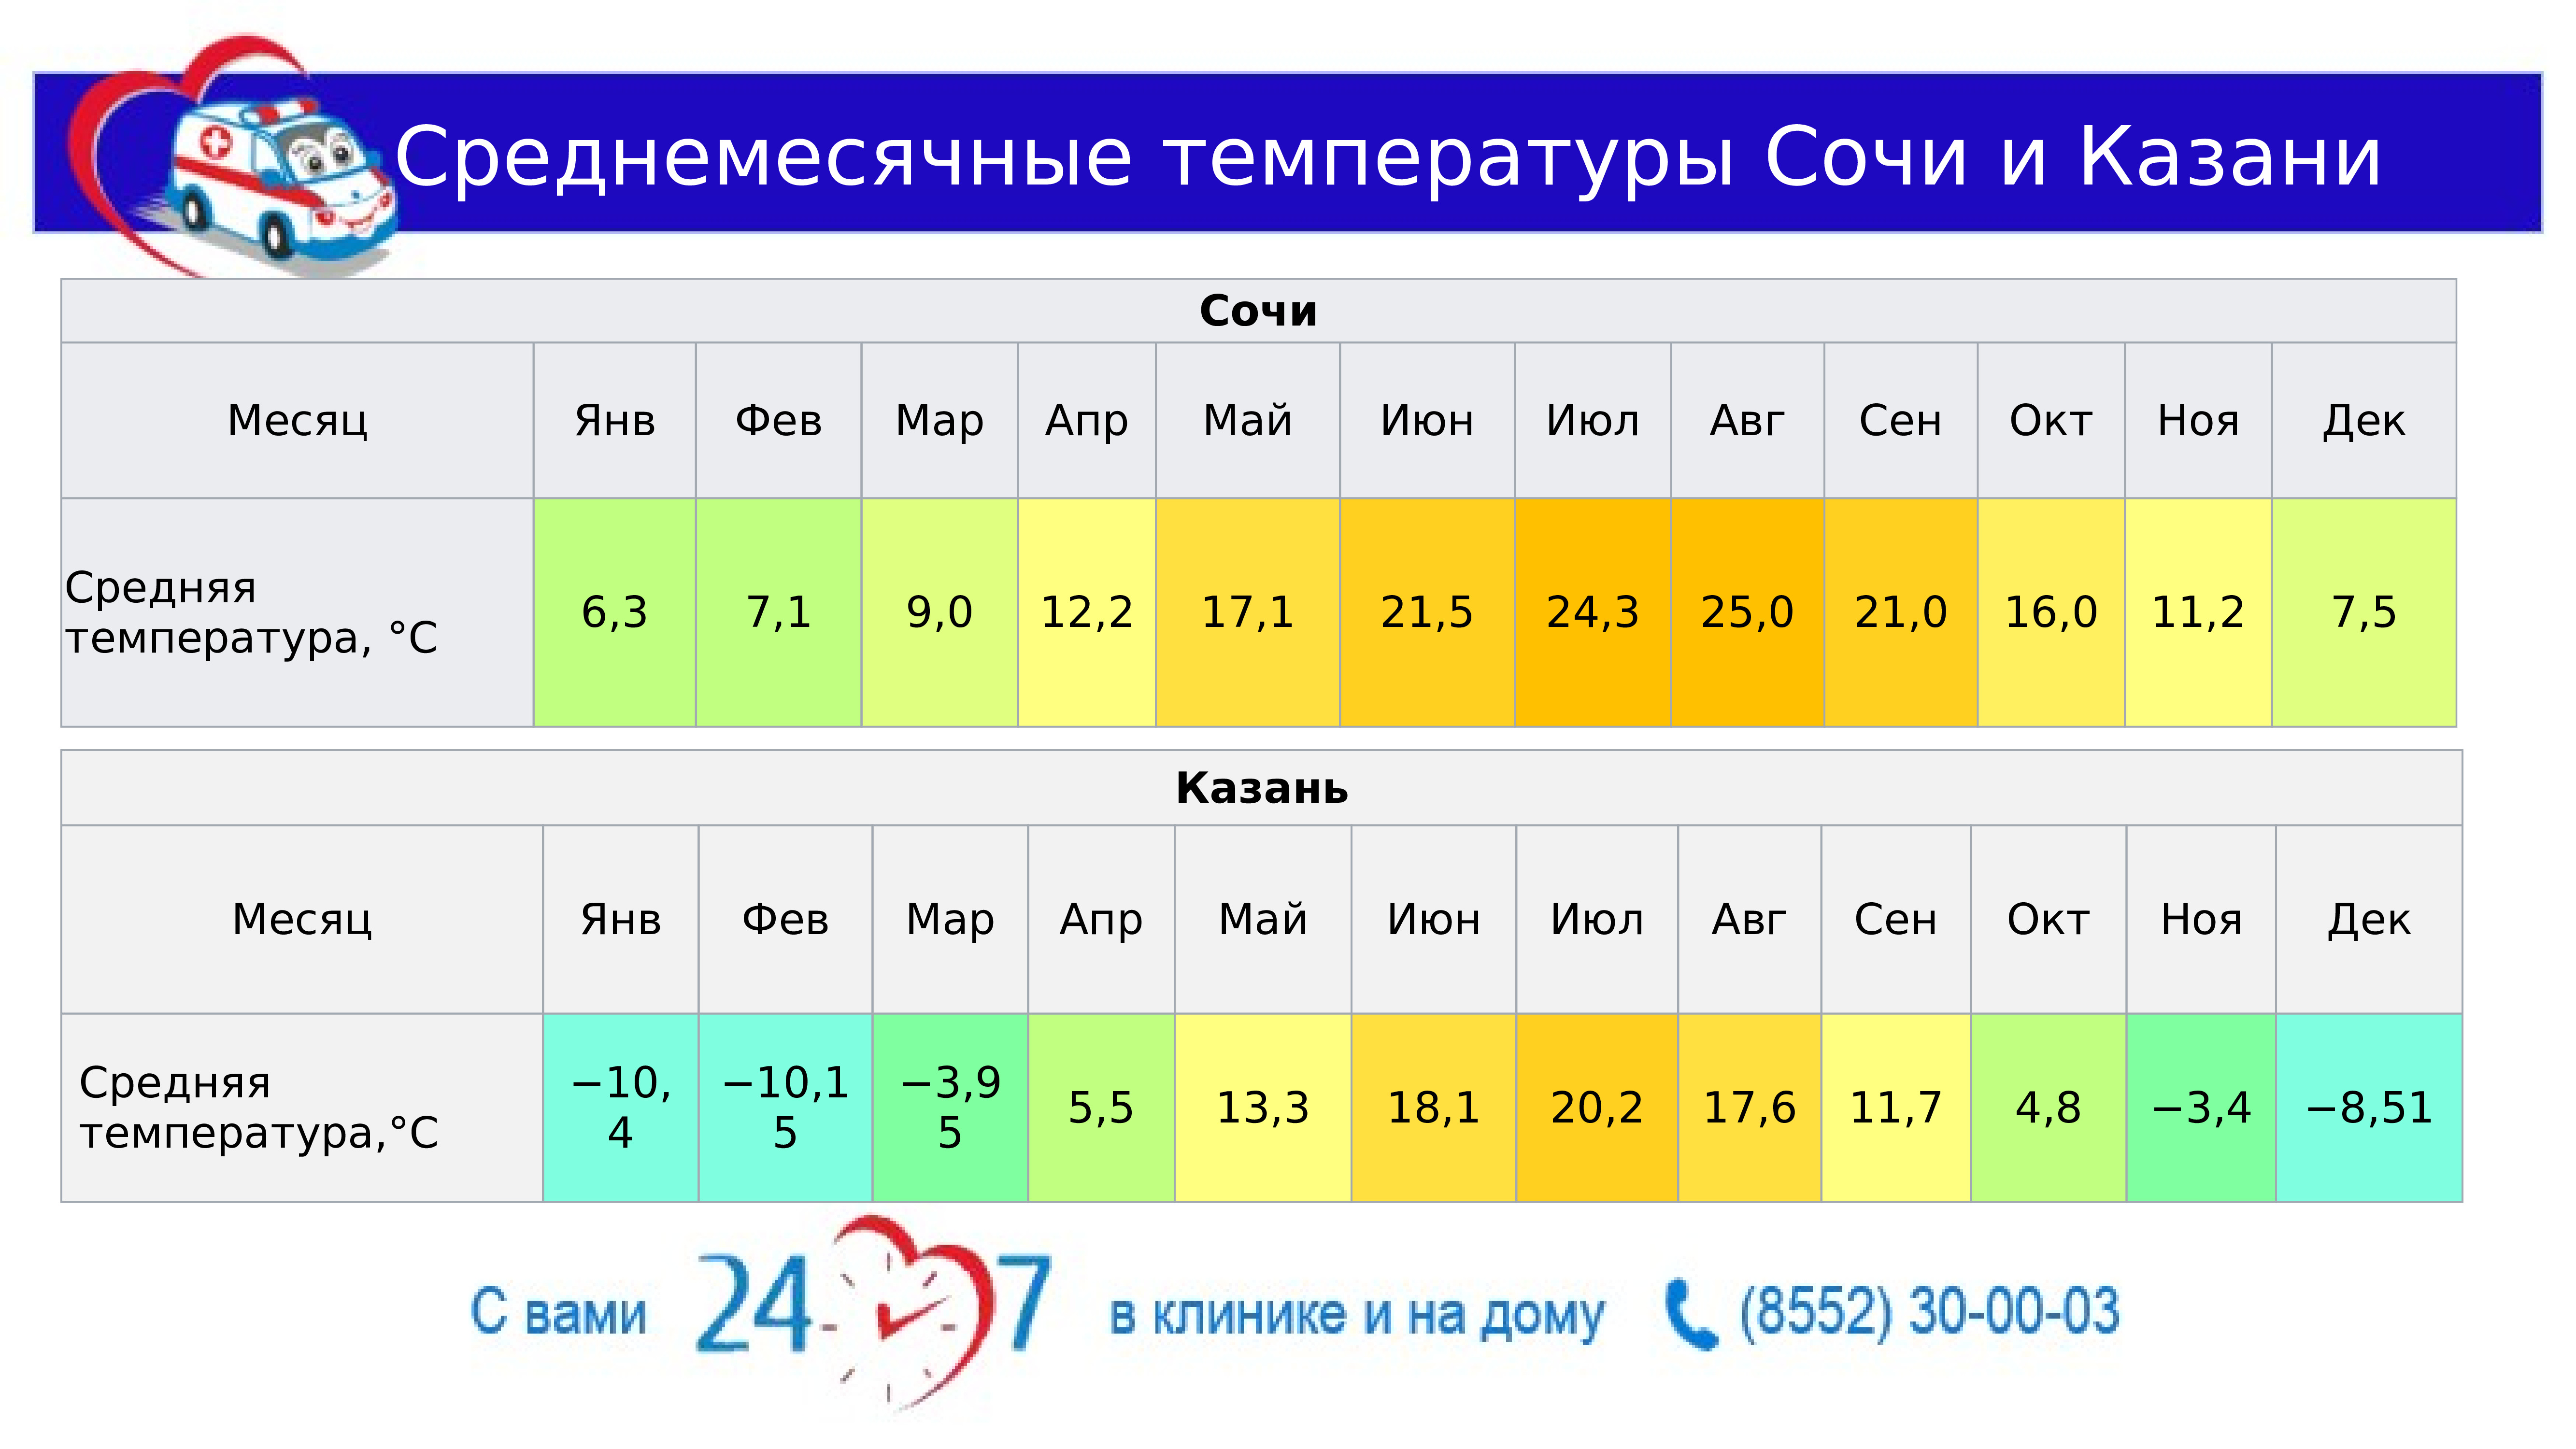 Температура в нефтеюганске. Средняя температура в Сочи. Средняя температура в Казани. Средняя температура в Сочи по месяцам. Средняя температура в Казани по месяцам.